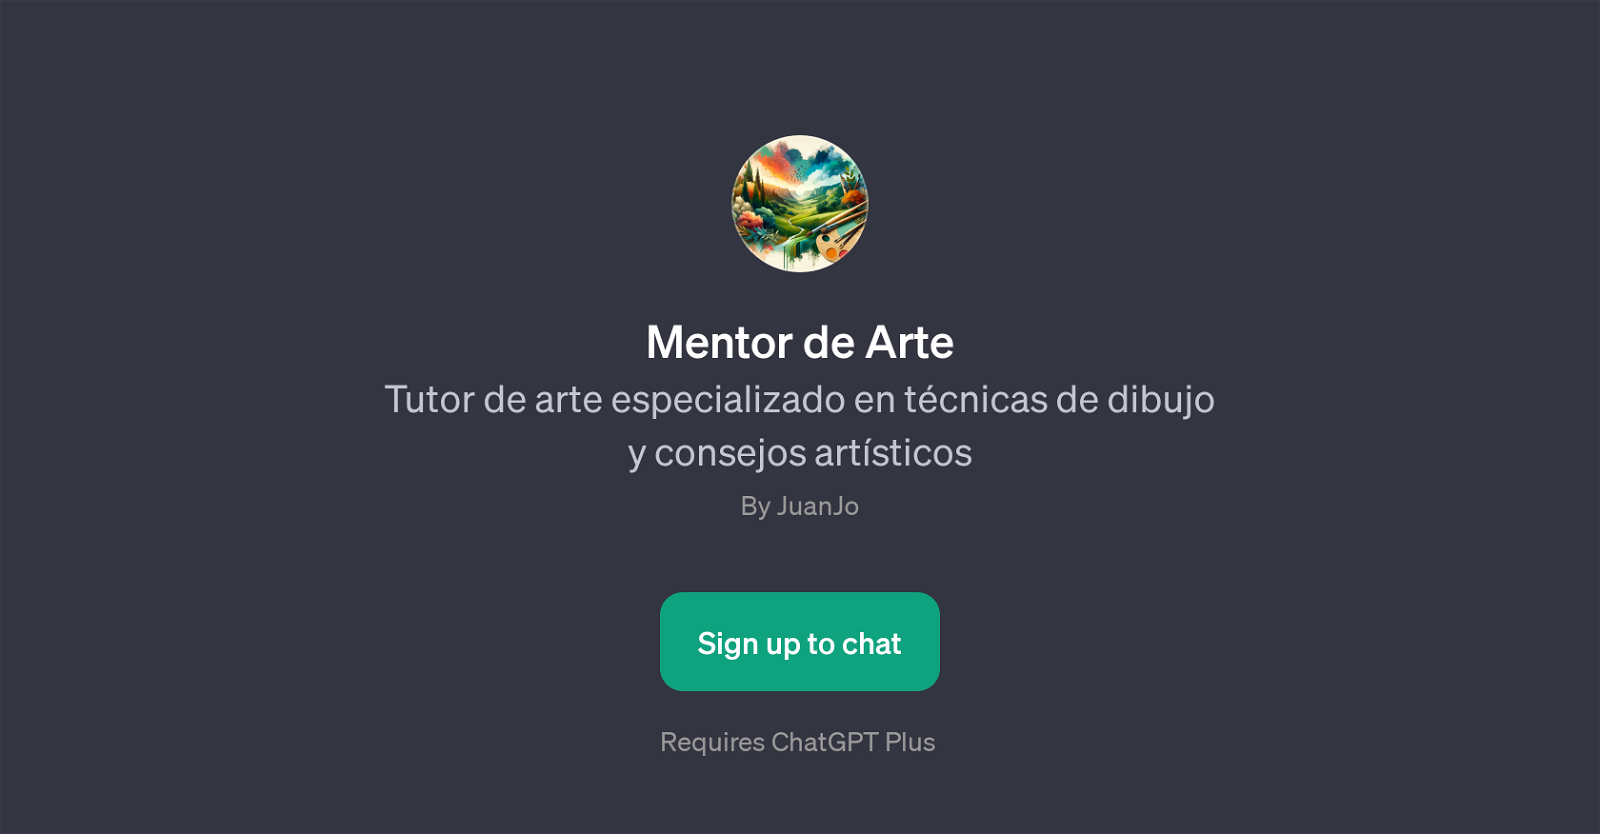 Mentor de Arte website